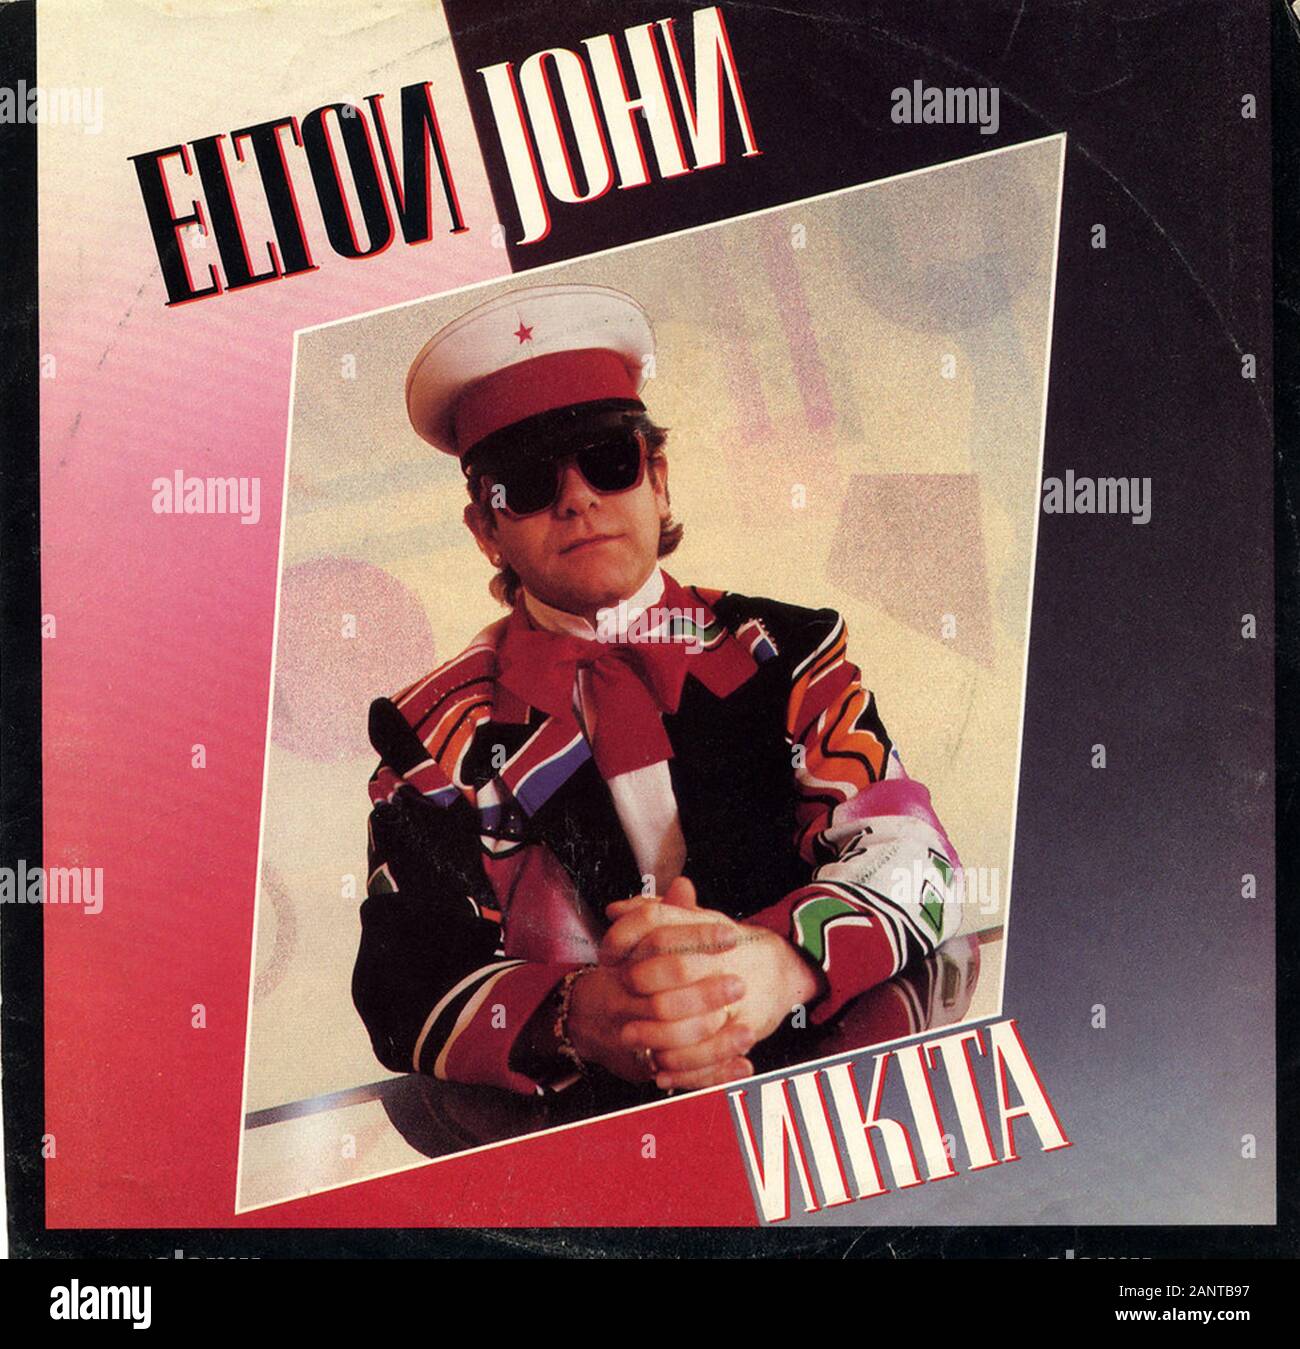 Elton John - Nikita - Classic vintage vinyl album Stock Photo - Alamy